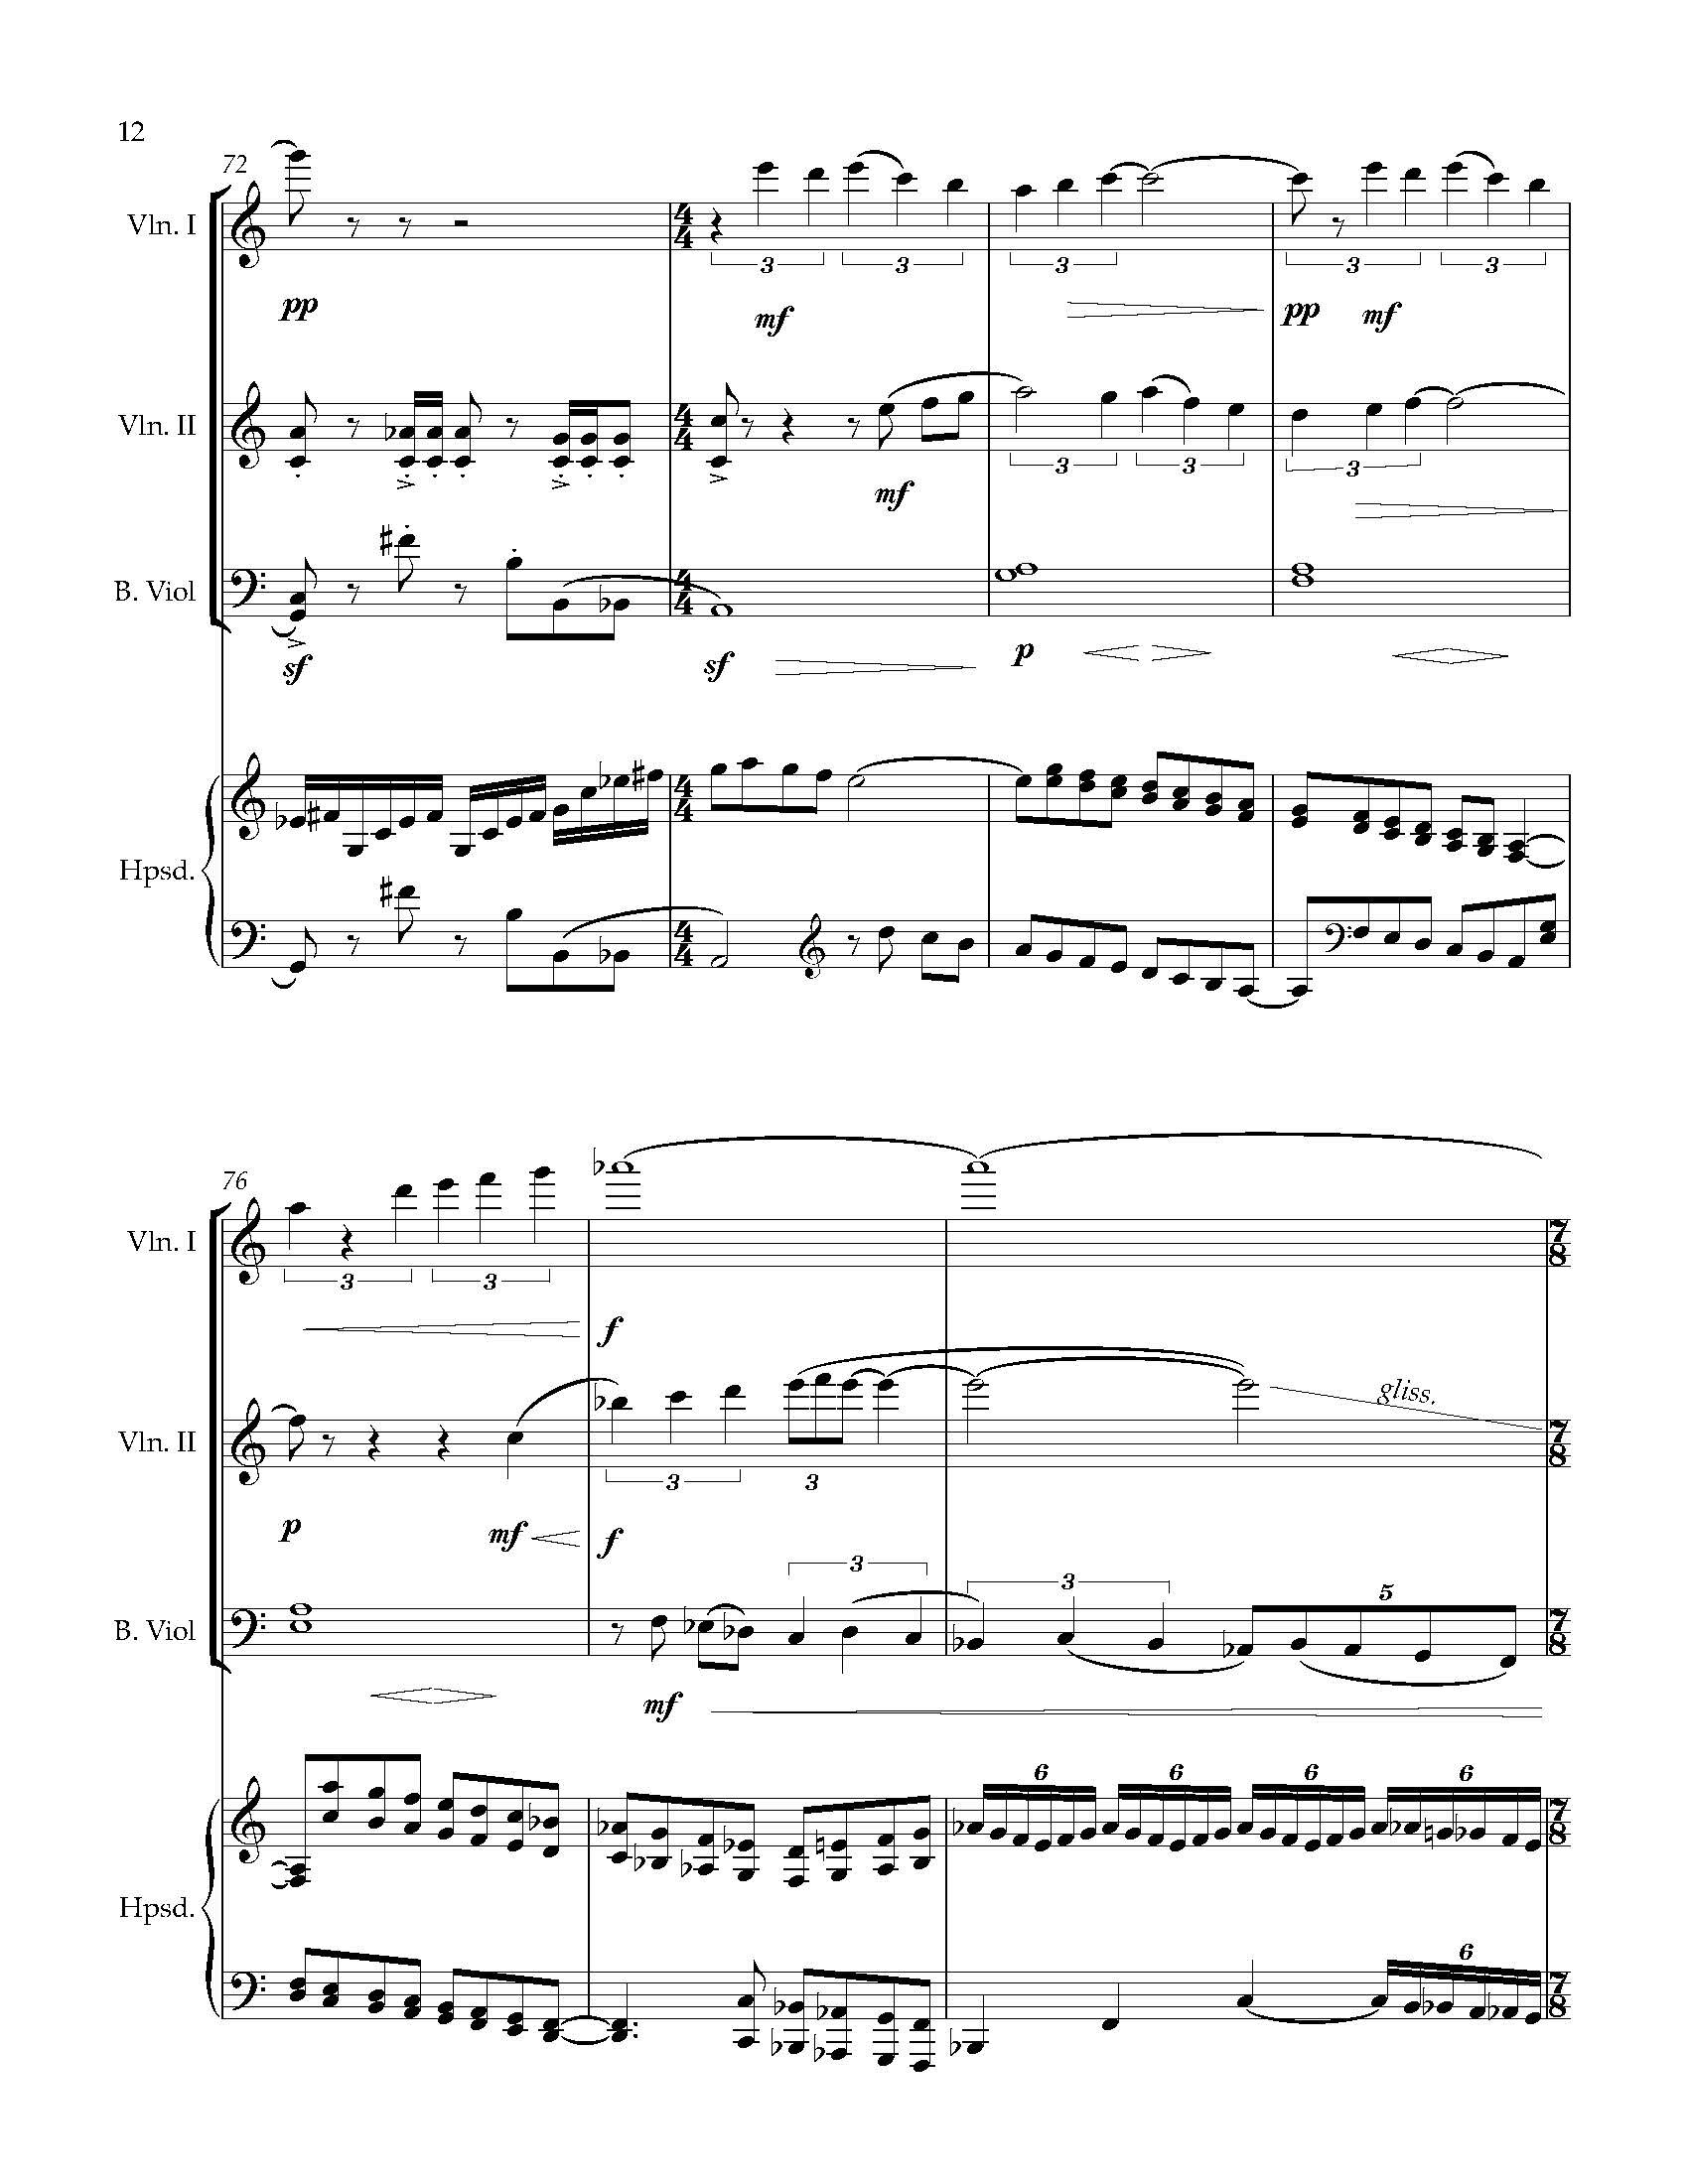 Sonata Sonare - Complete Score_Page_18.jpg